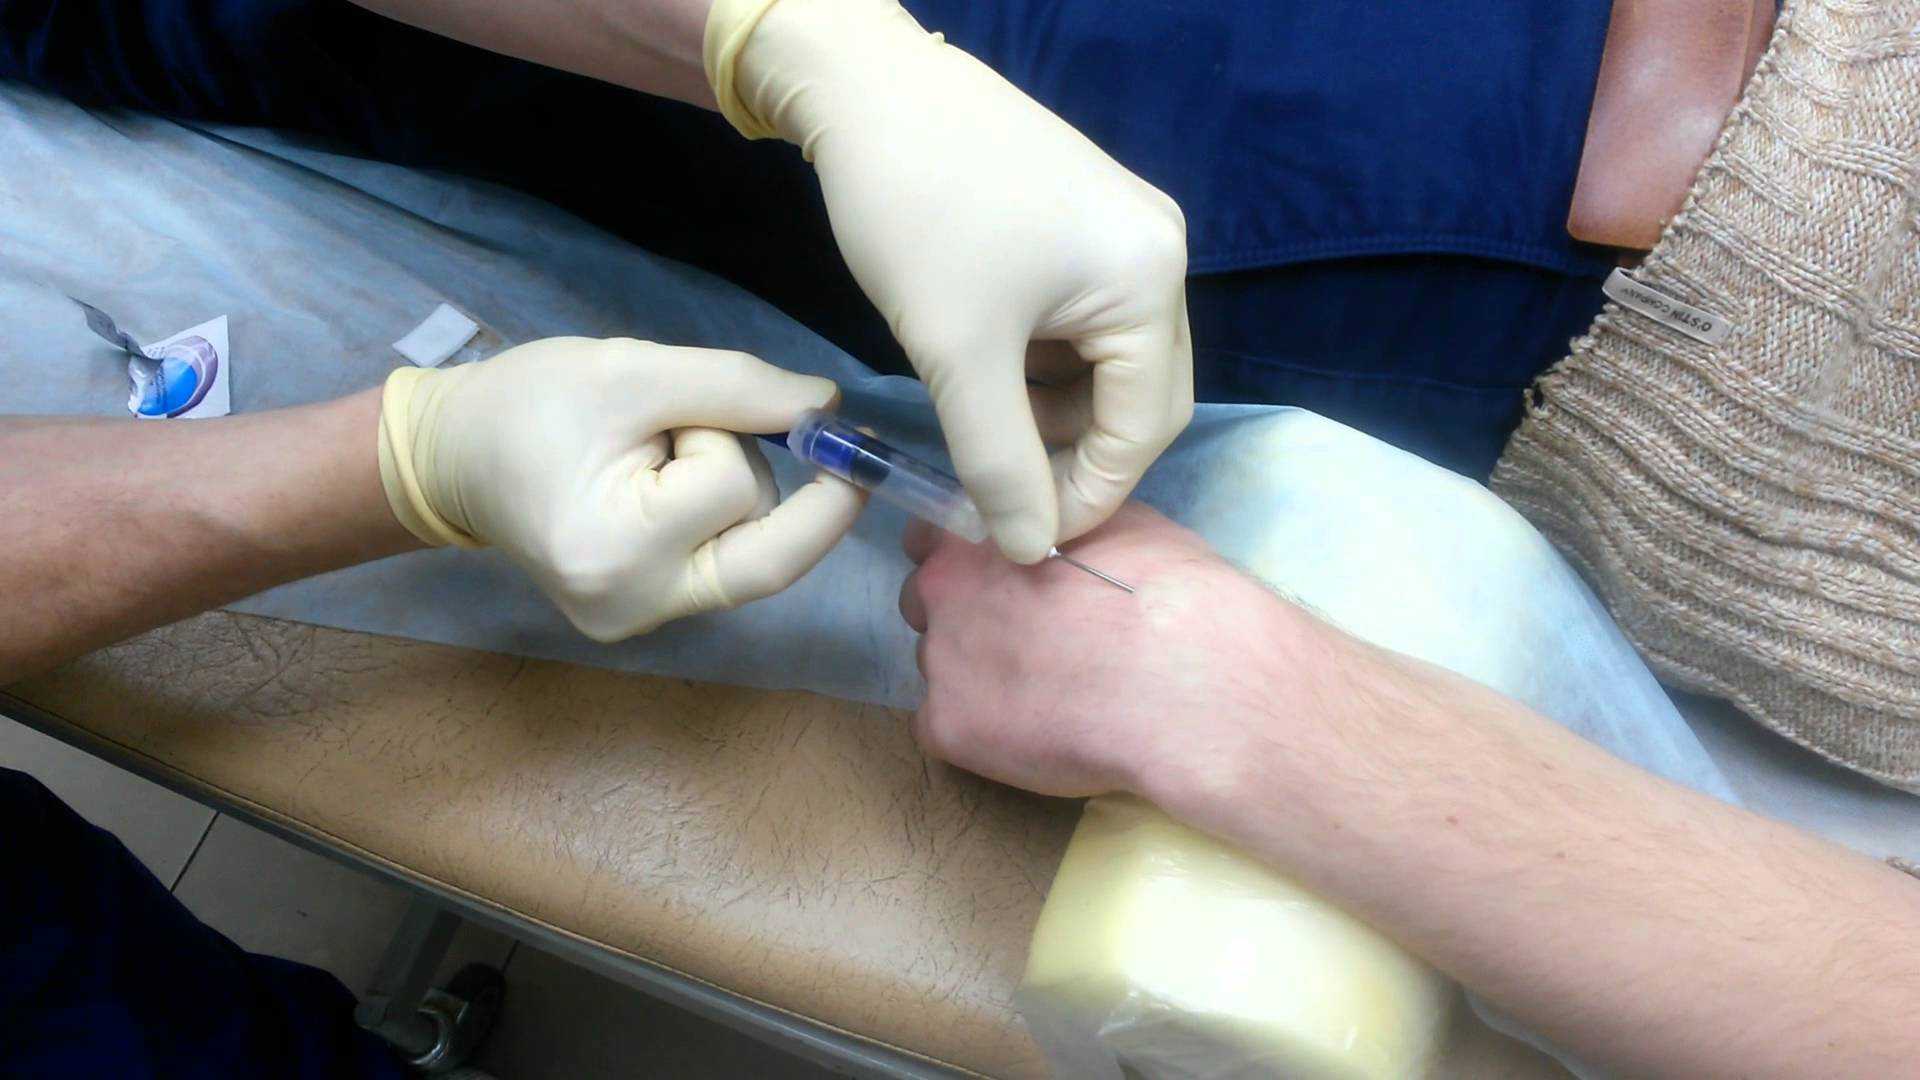 Гигрома / ганглий лучезапястного сустава кисти – лечение, операция по лазерному удалению / иссечению, реабилитация – травматология цкб ран